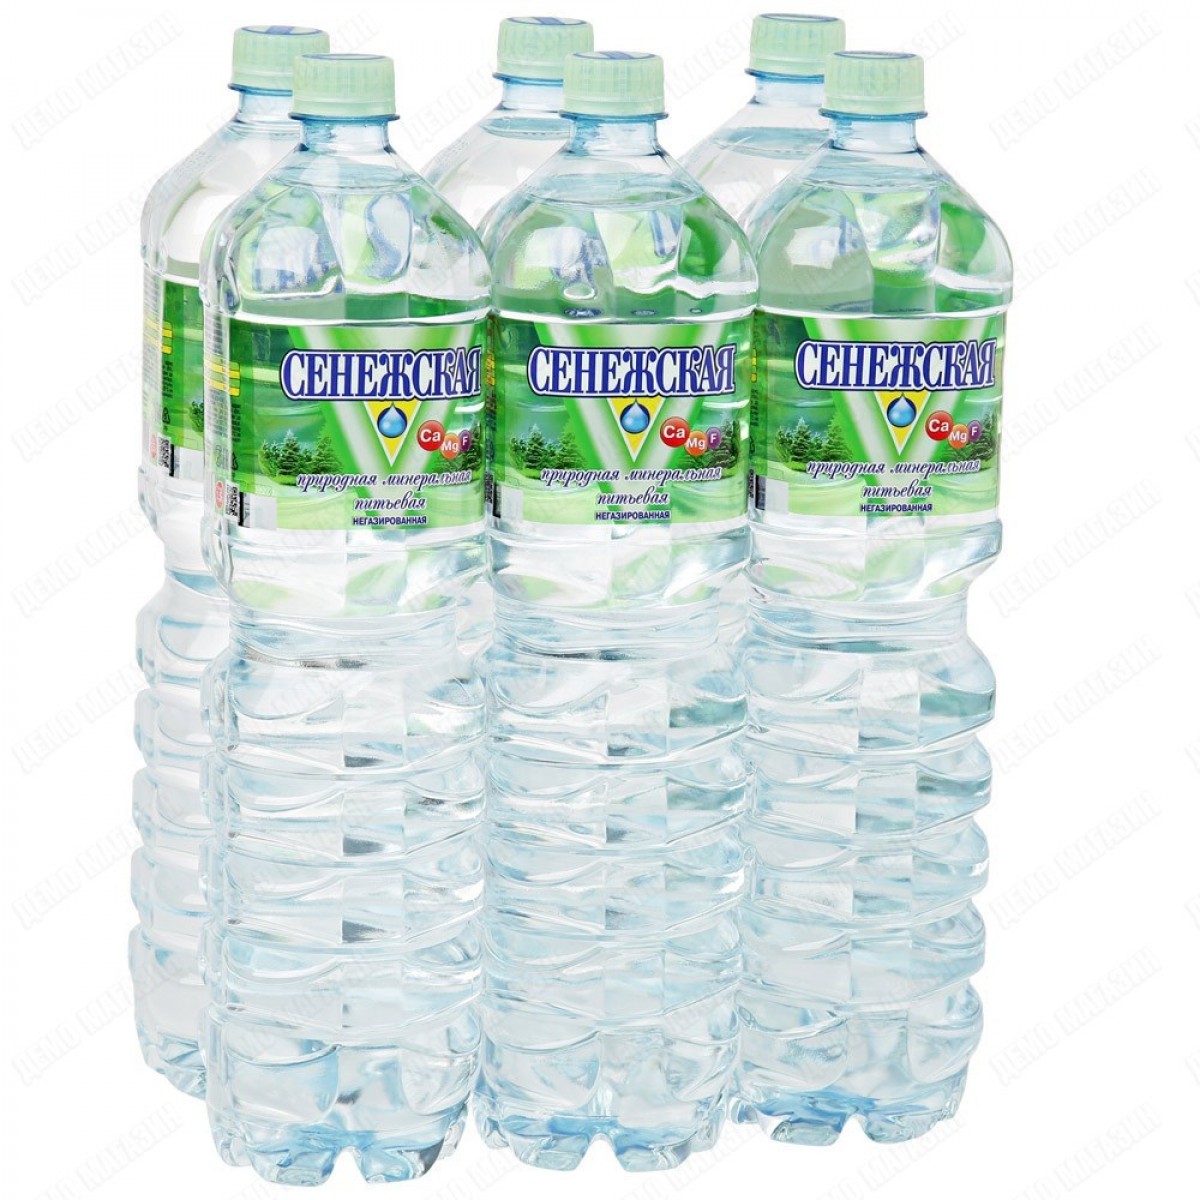 Сенежская вода 1.5 литра. Сенежская вода 1.5л. Сенежская вода 1,5 ГАЗ. Сенежская вода 1.5. Сенежская негазированная 1.5.